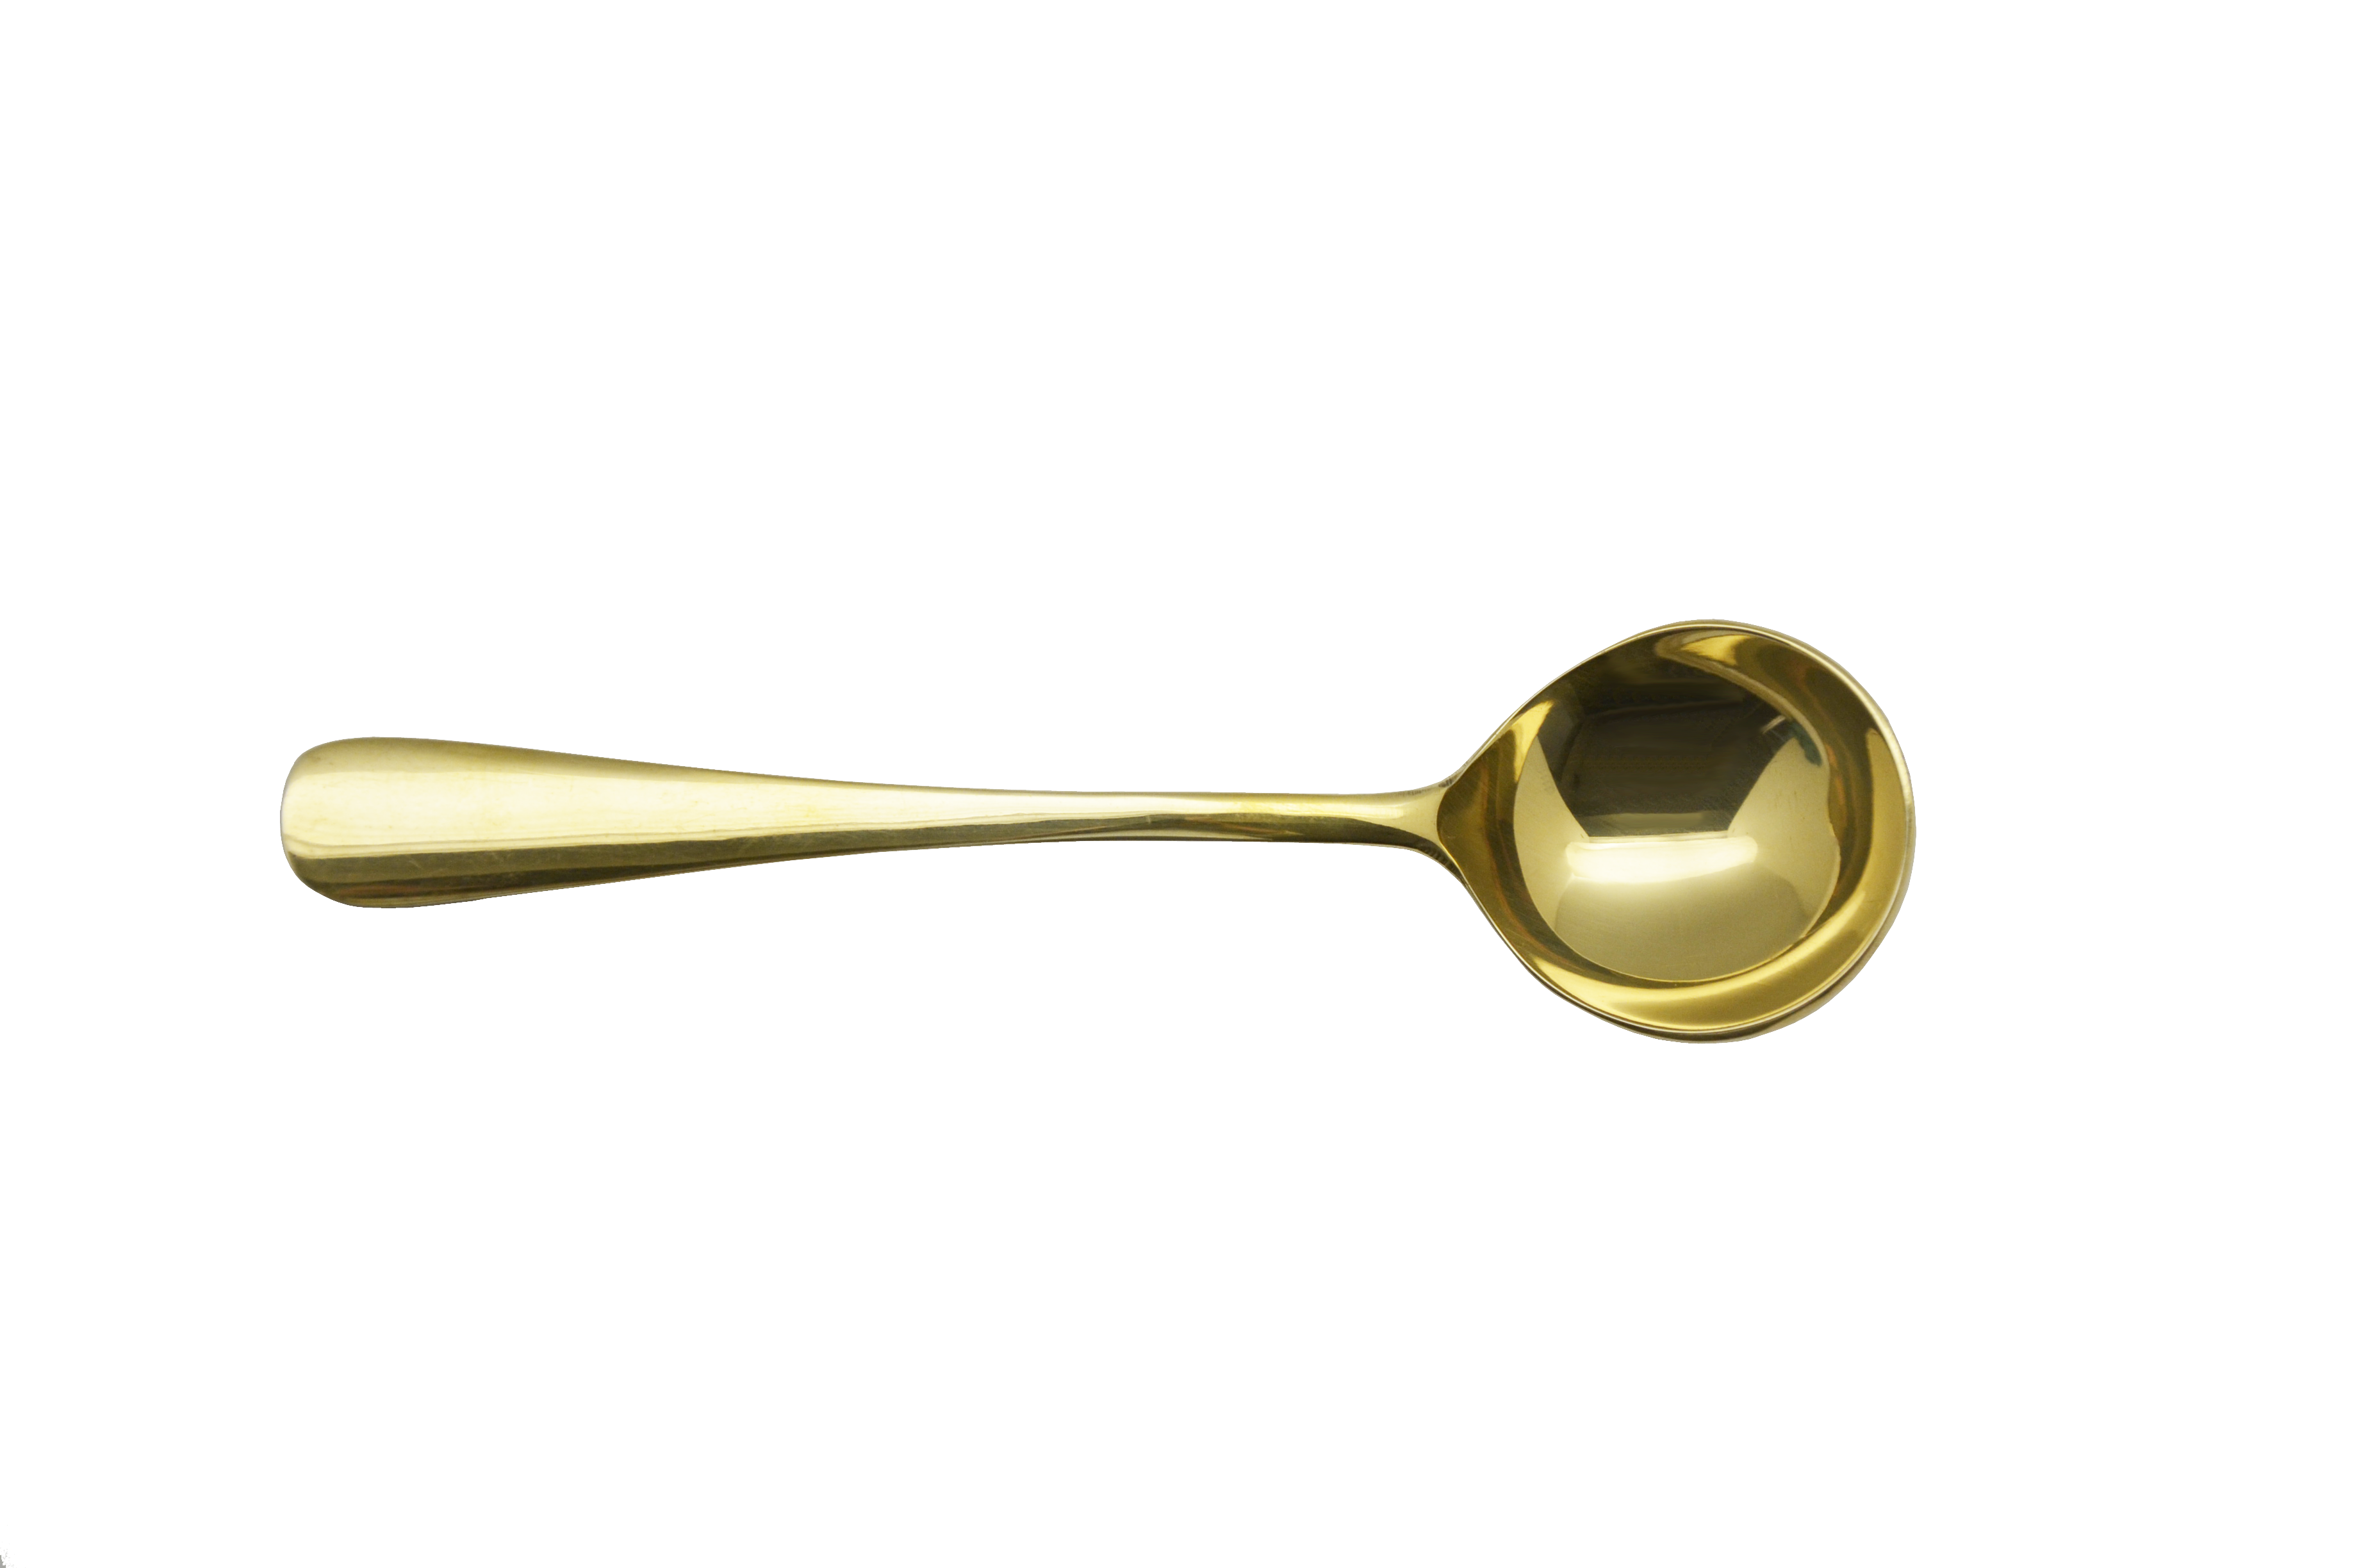 Krumbs Kitchen - Elements Spoon with Metallic Gold Handle